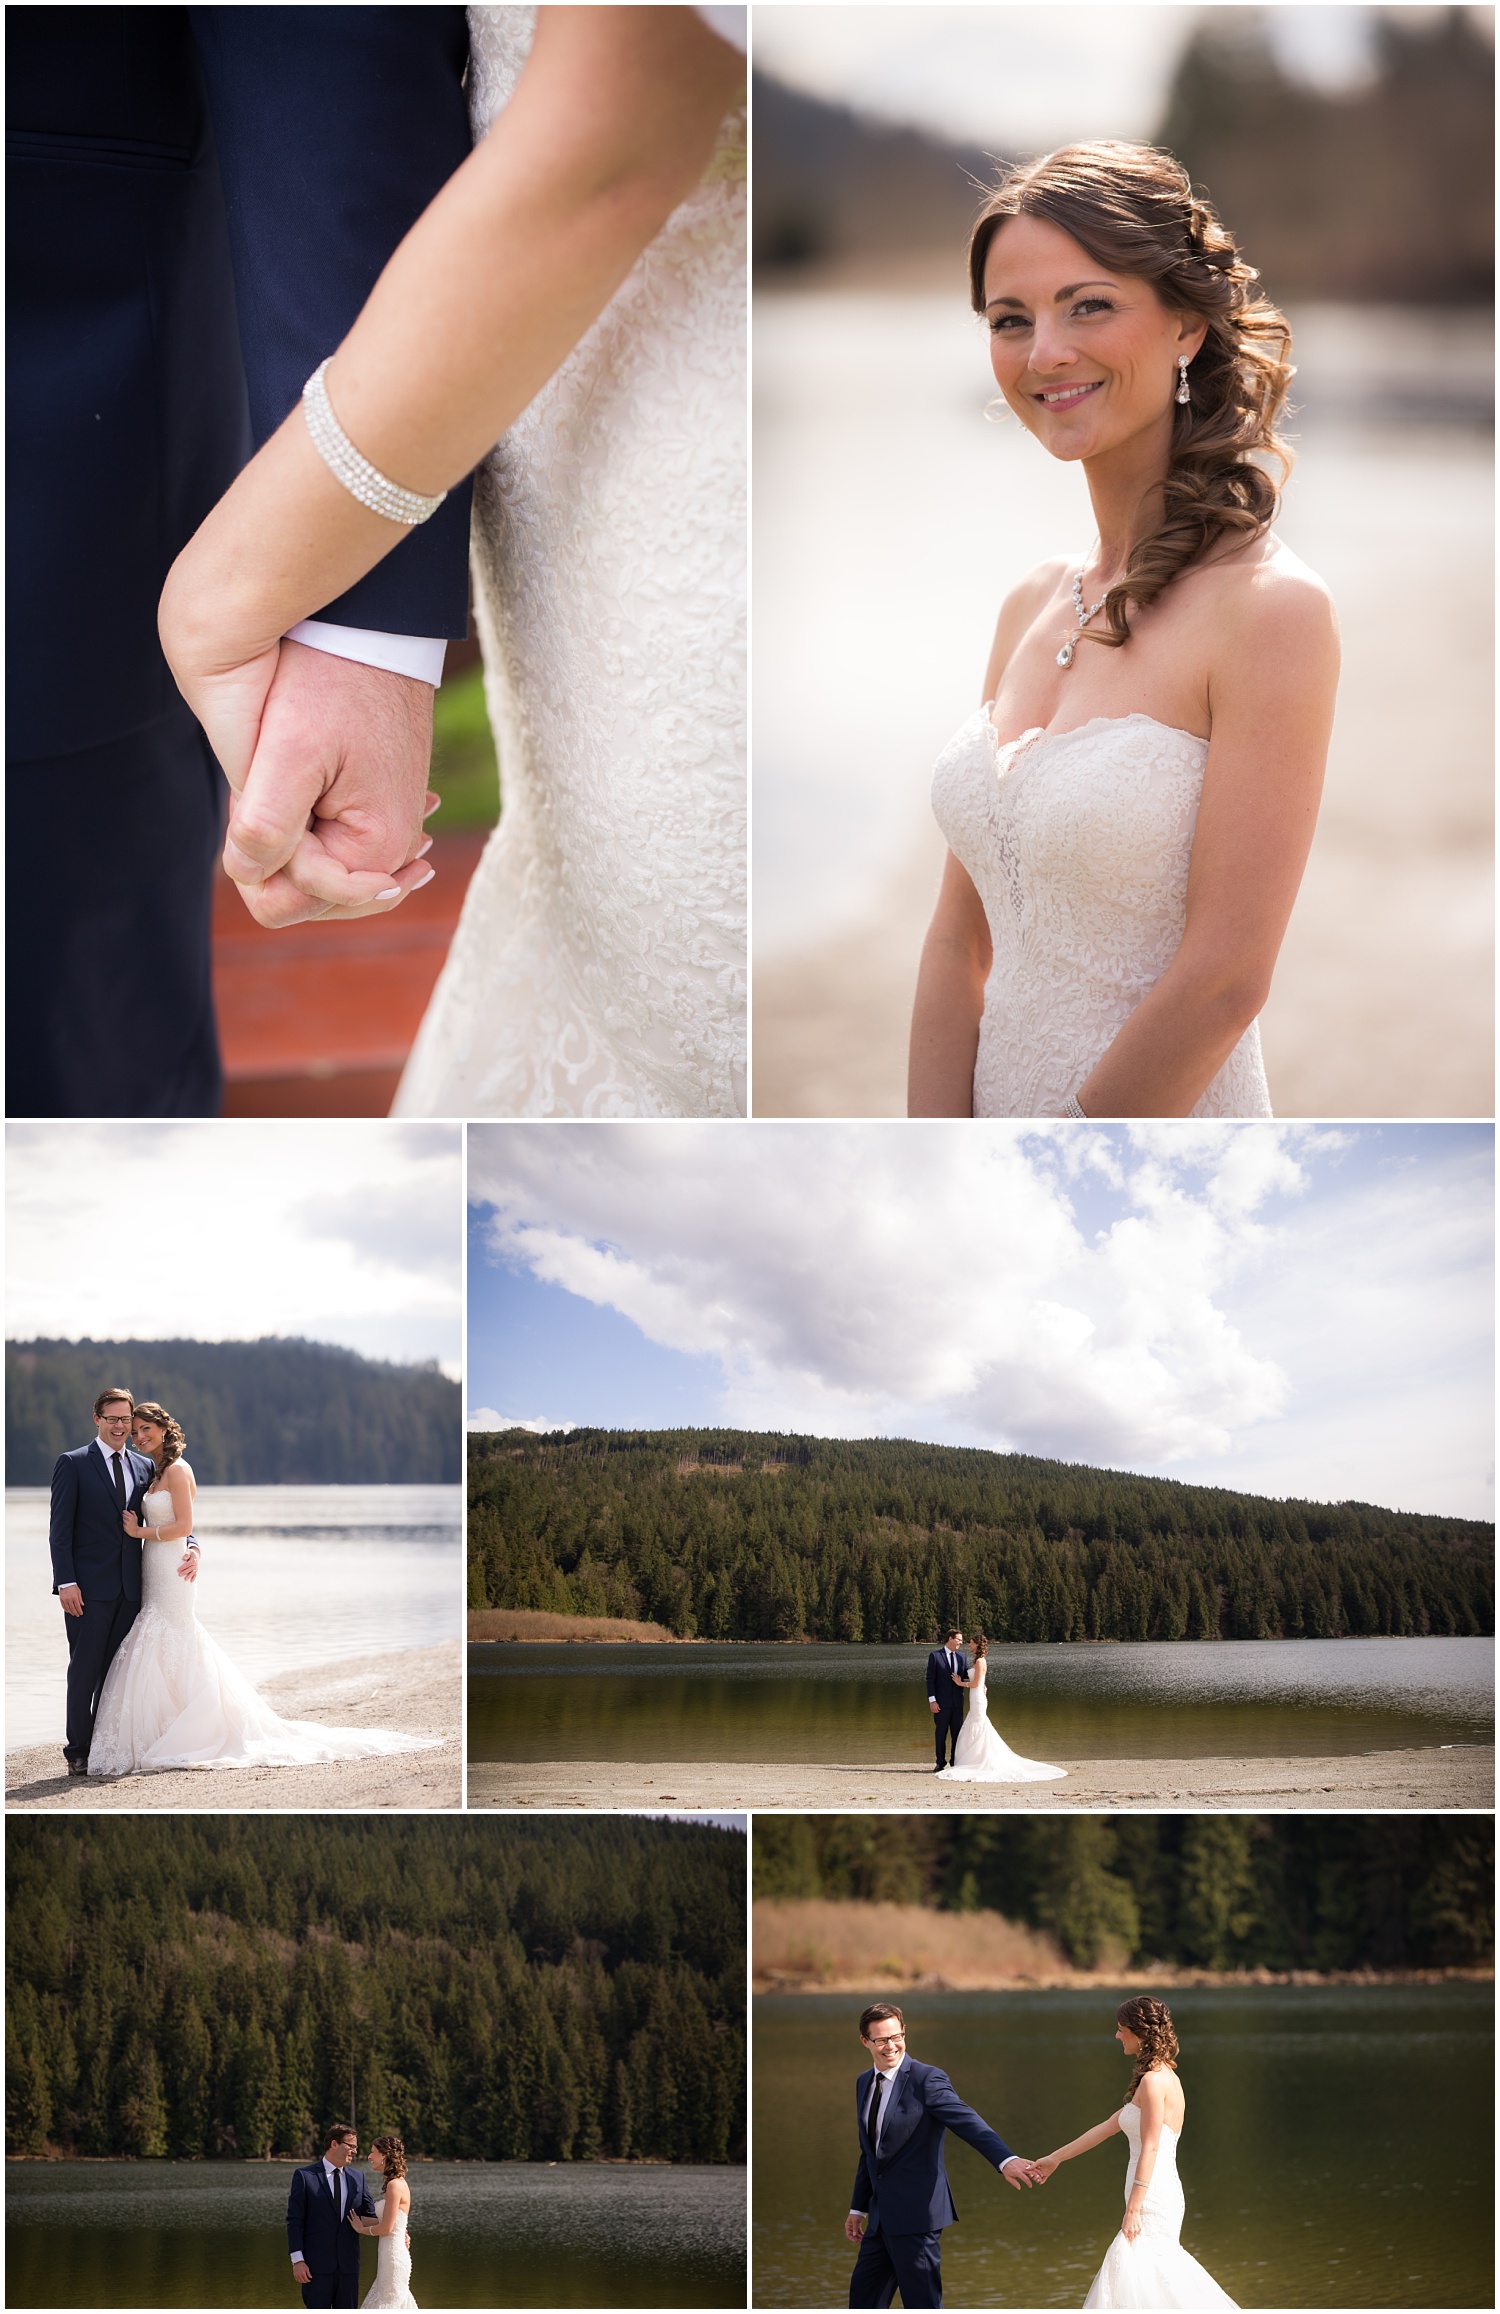 Amazing Day Photography - Mission Wedding Photographer - Hayward Lake Bridal Session - Langley Wedding Photographer (8).jpg